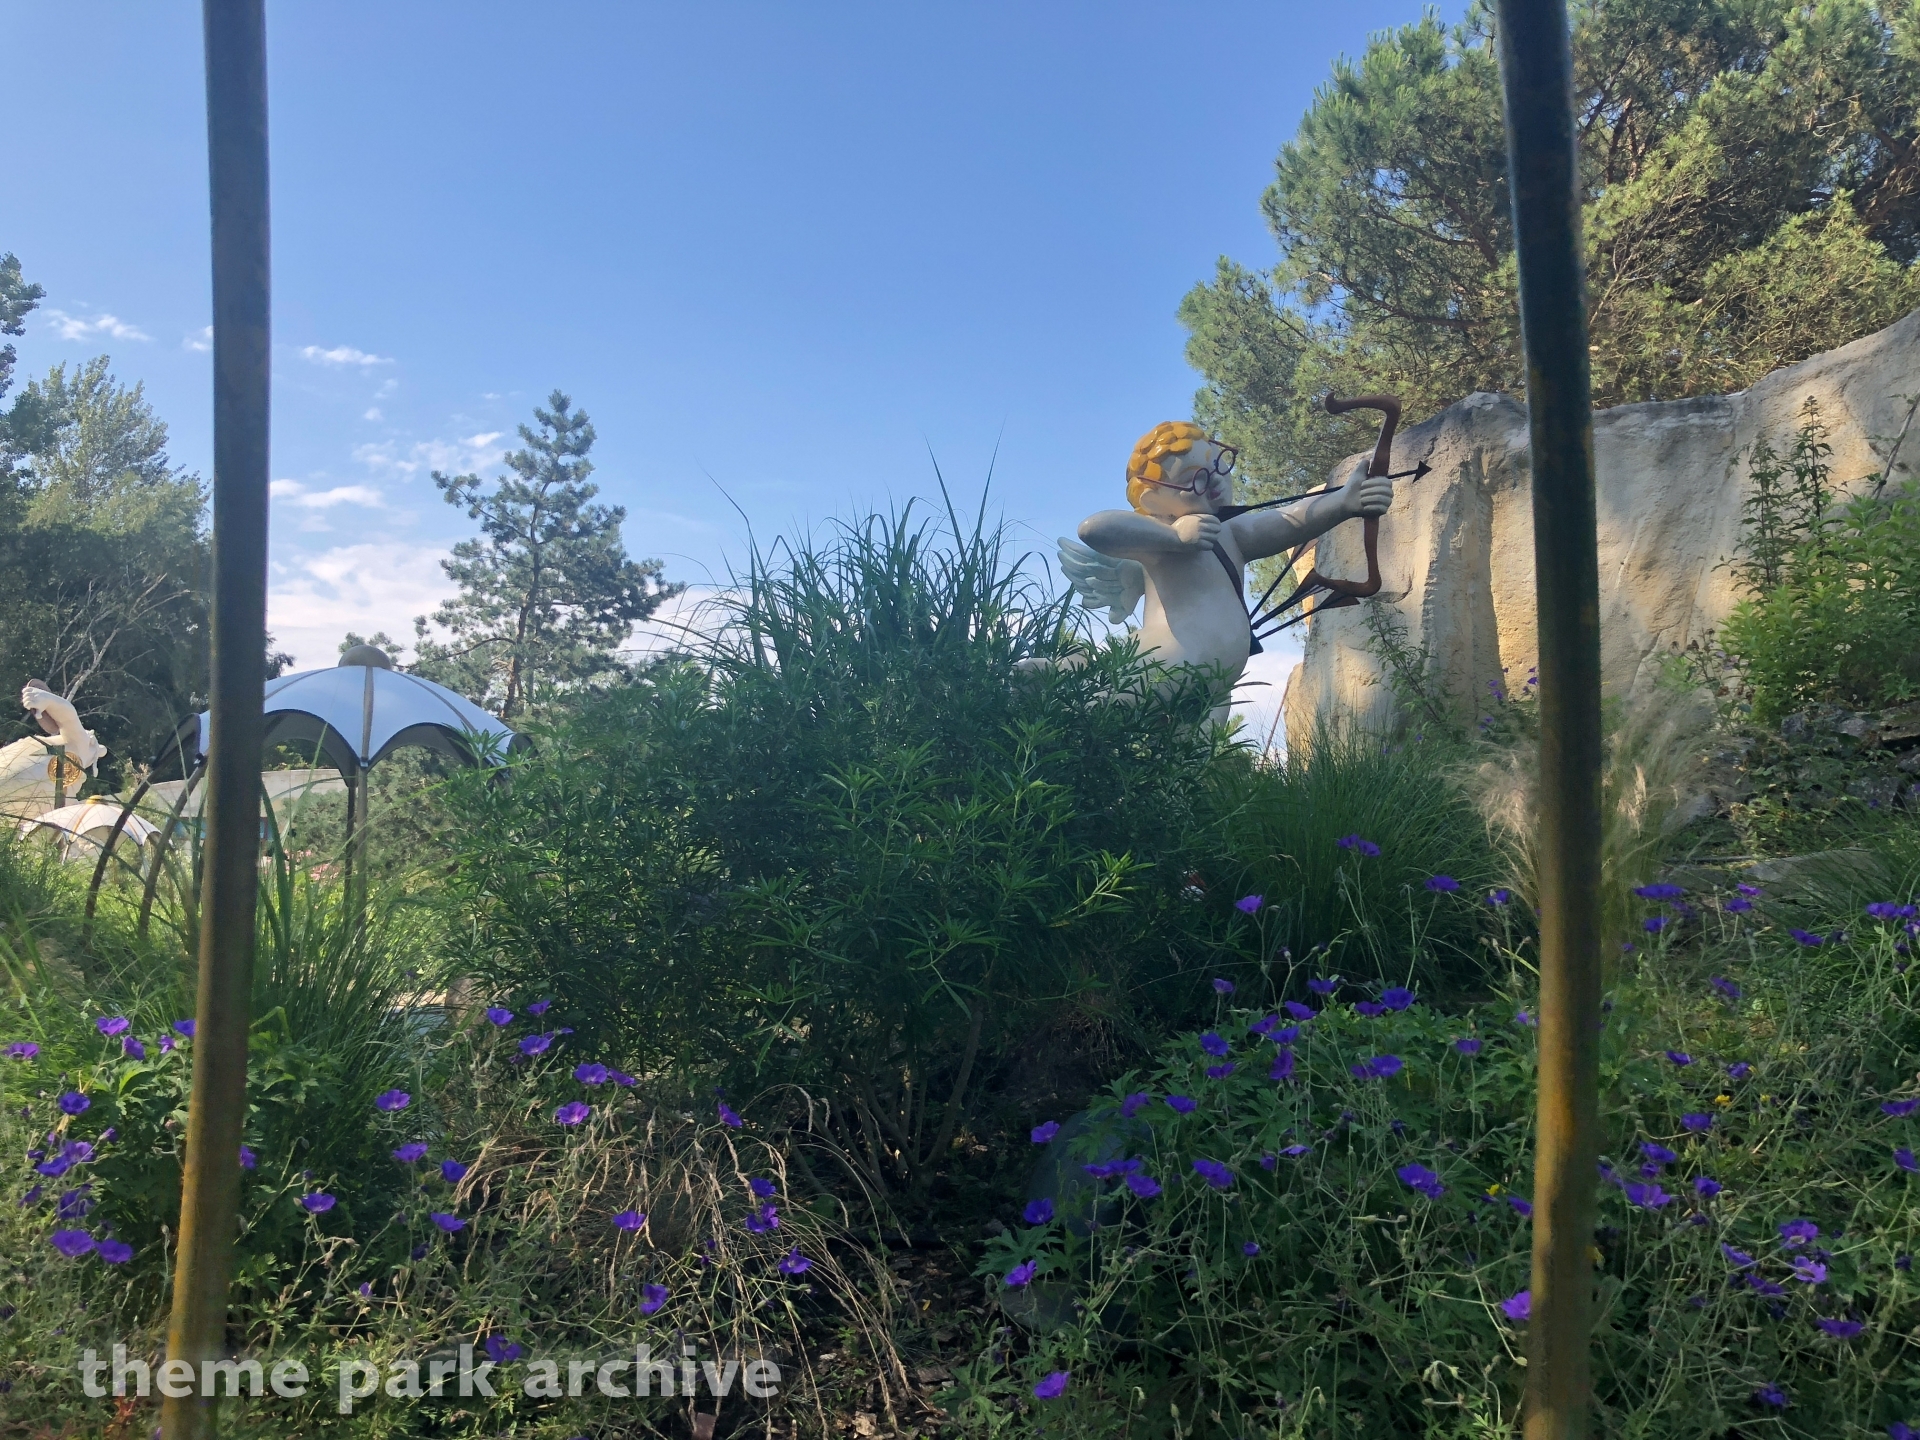 La Riviere D Elis at Parc Asterix